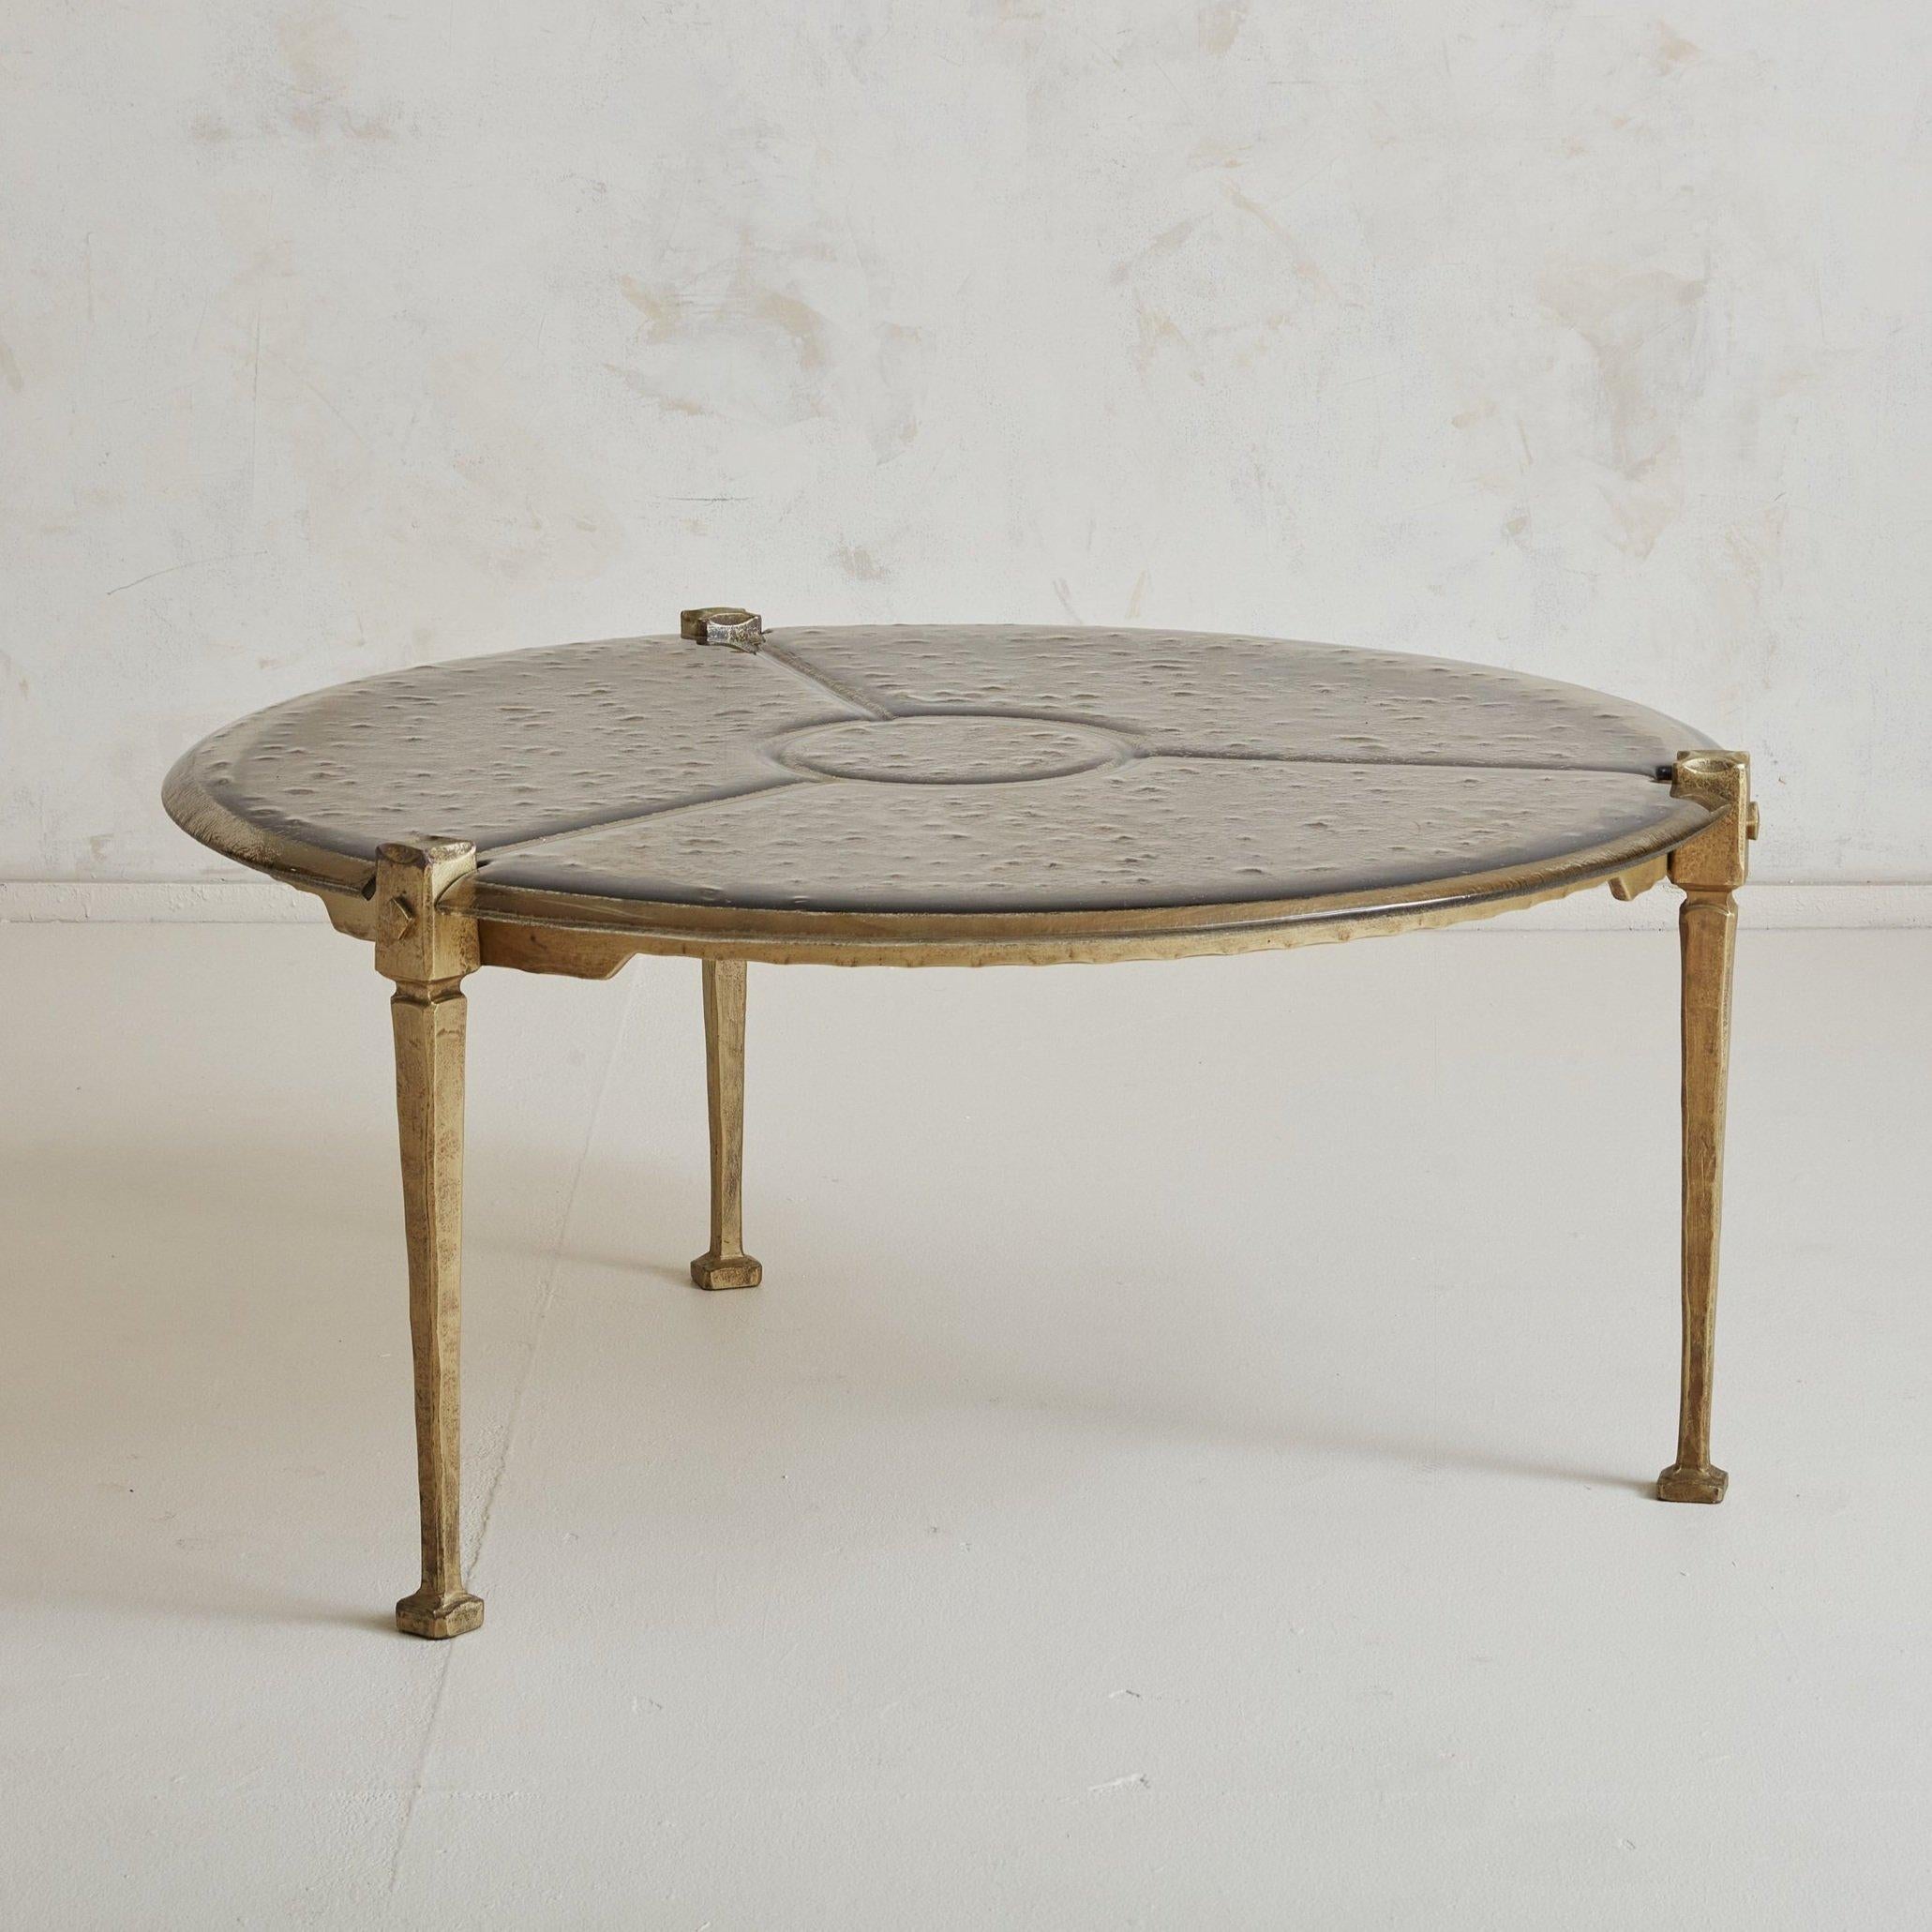 Rare table basse ronde brutaliste en bronze et verre du designer allemand Lothar Klute. Cette table basse présente une structure en bronze forgé avec trois pieds effilés, un plateau en verre bulle texturé et des pieds carrés en bronze. Un magnifique